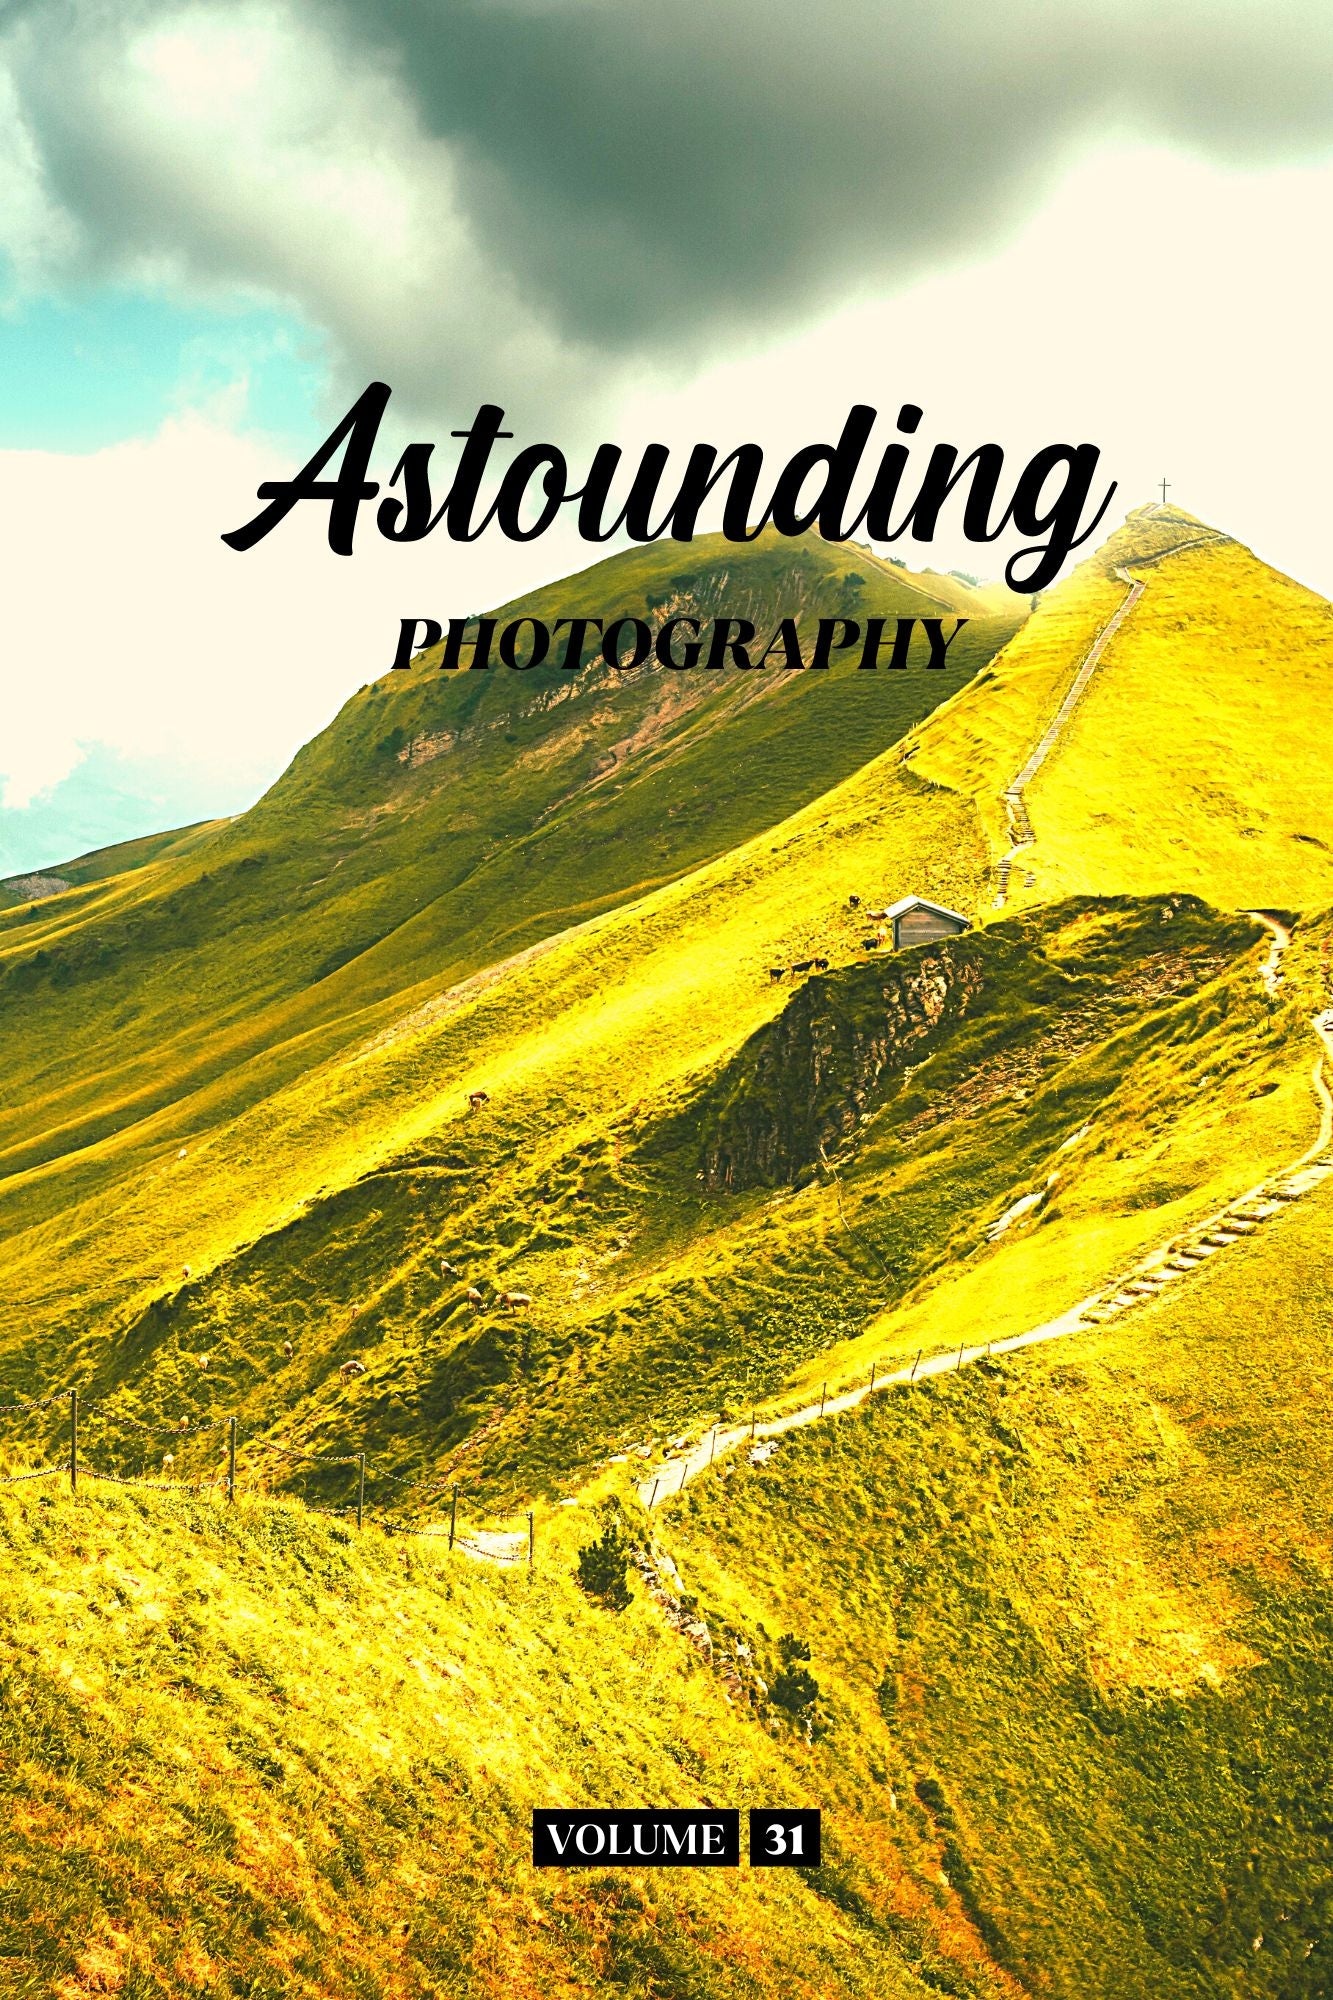 Astounding Photography Volume 31 (Physical Book Pre-Order)